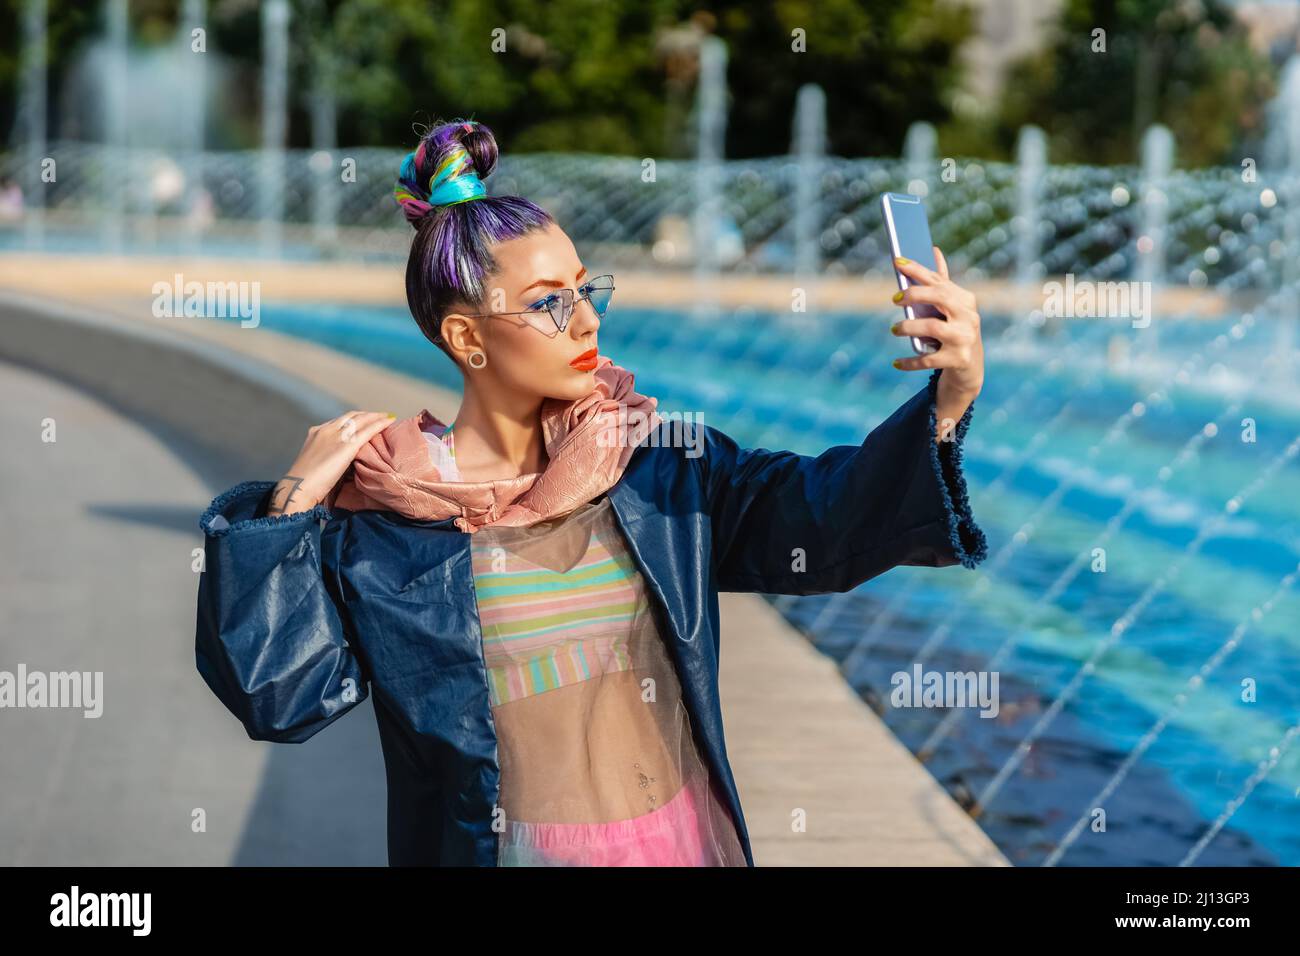 Verspieltes cooles hippy junges Mädchen mit Kopfhörern und verrückten Haaren, die selfie auf der Straße einnehmen Stockfoto